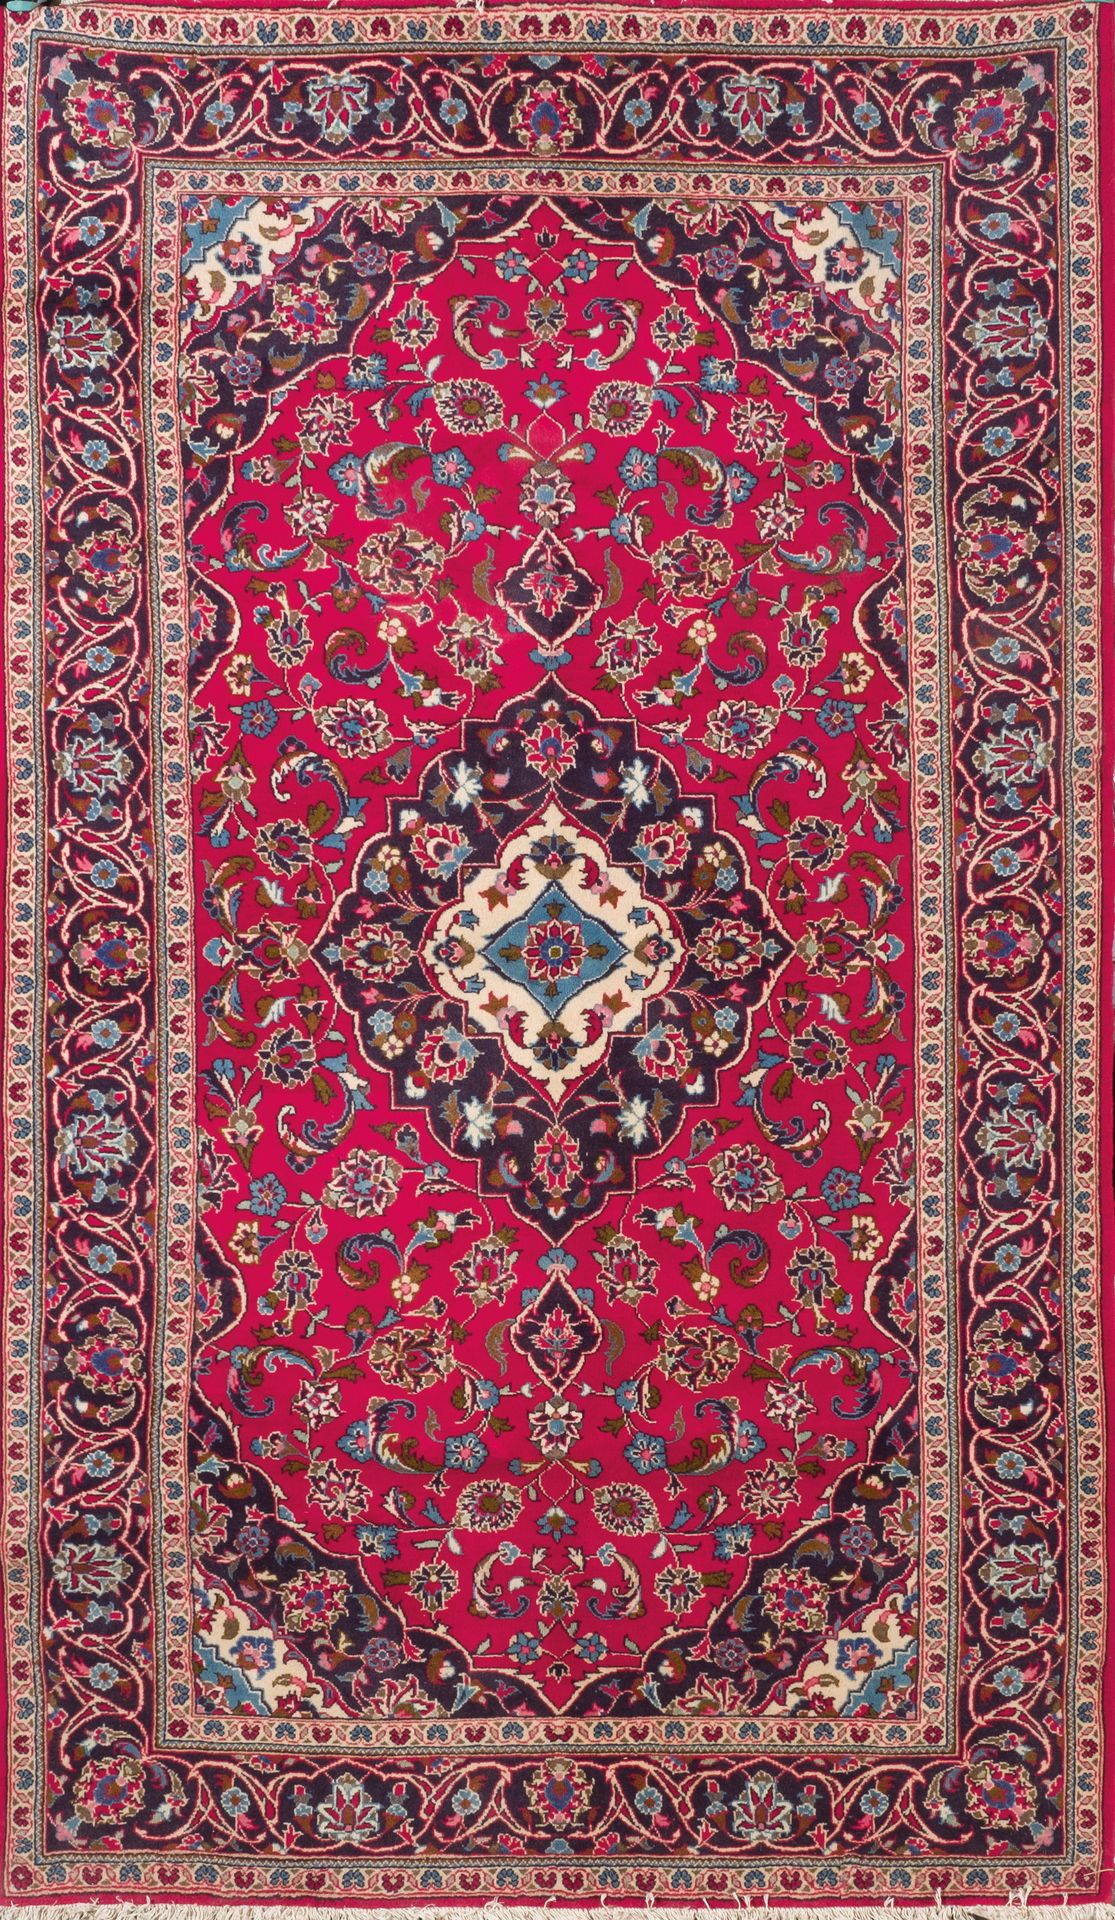 Null 伊朗的羊毛卡尚地毯。复杂地交织着植物和花卉的装饰。背景为红色，互补色为海军蓝和米色。20世纪。